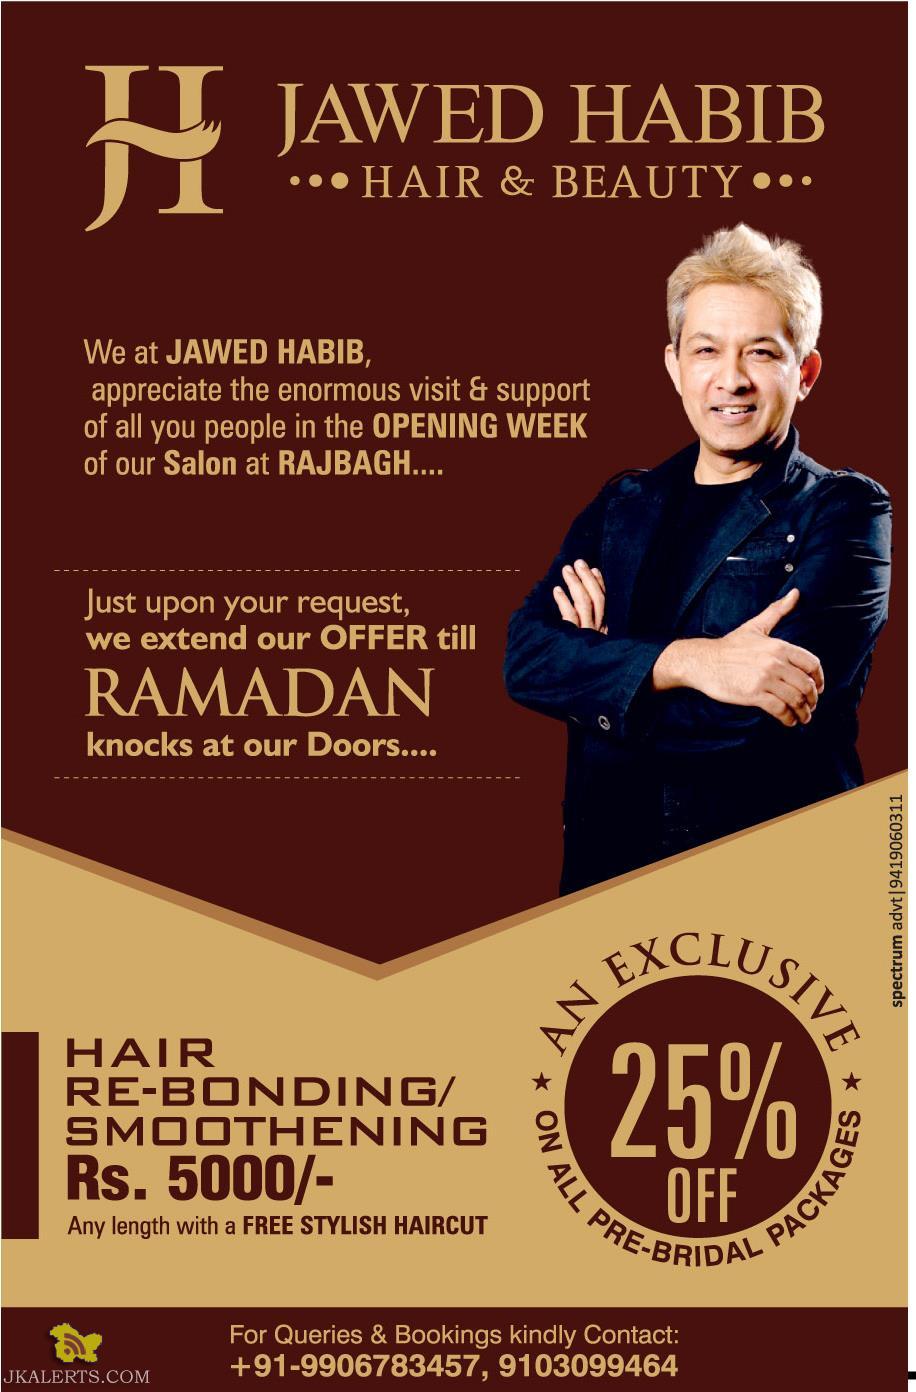 Price Of Hair Smoothening In Jawed Habib Top Sellers, 52% OFF |  